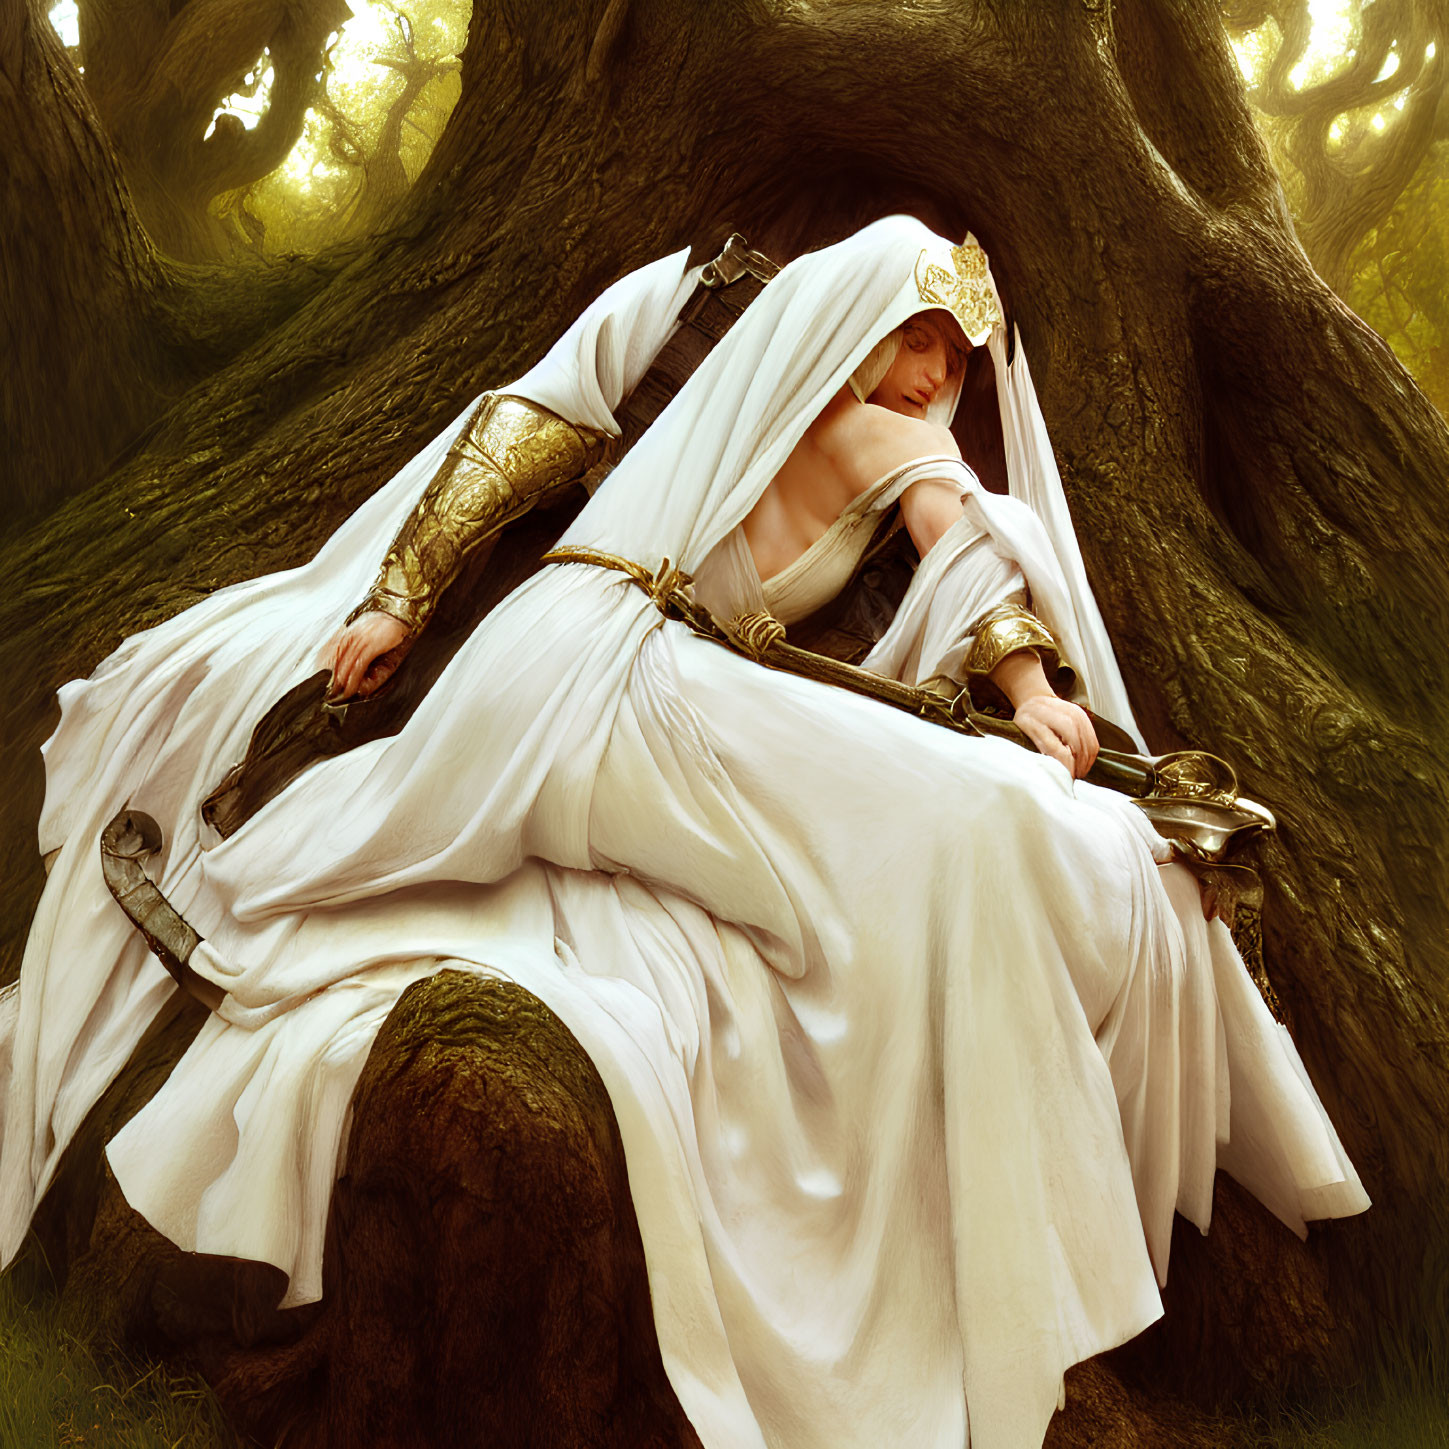 Elaborate Fantasy Attire: Person in White Robe in Forest